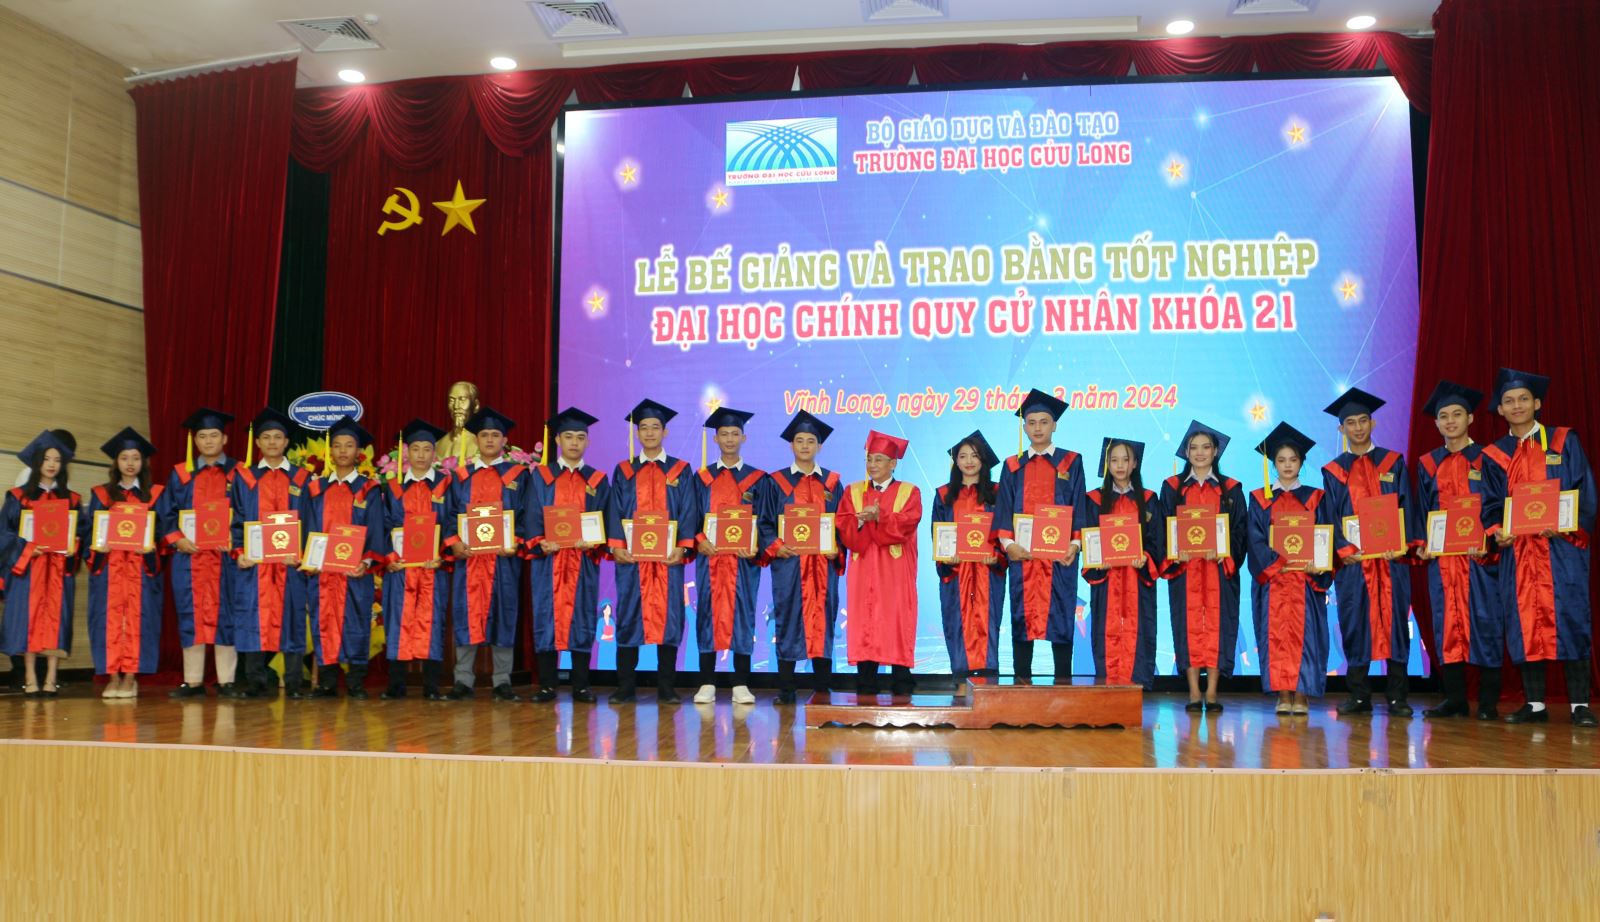 1.	Gần 250 tân cử nhân, trong đó có nhiều lưu học sinh Lào và Campuchia đã tốt nghiệp đại học chính quy khóa 21.